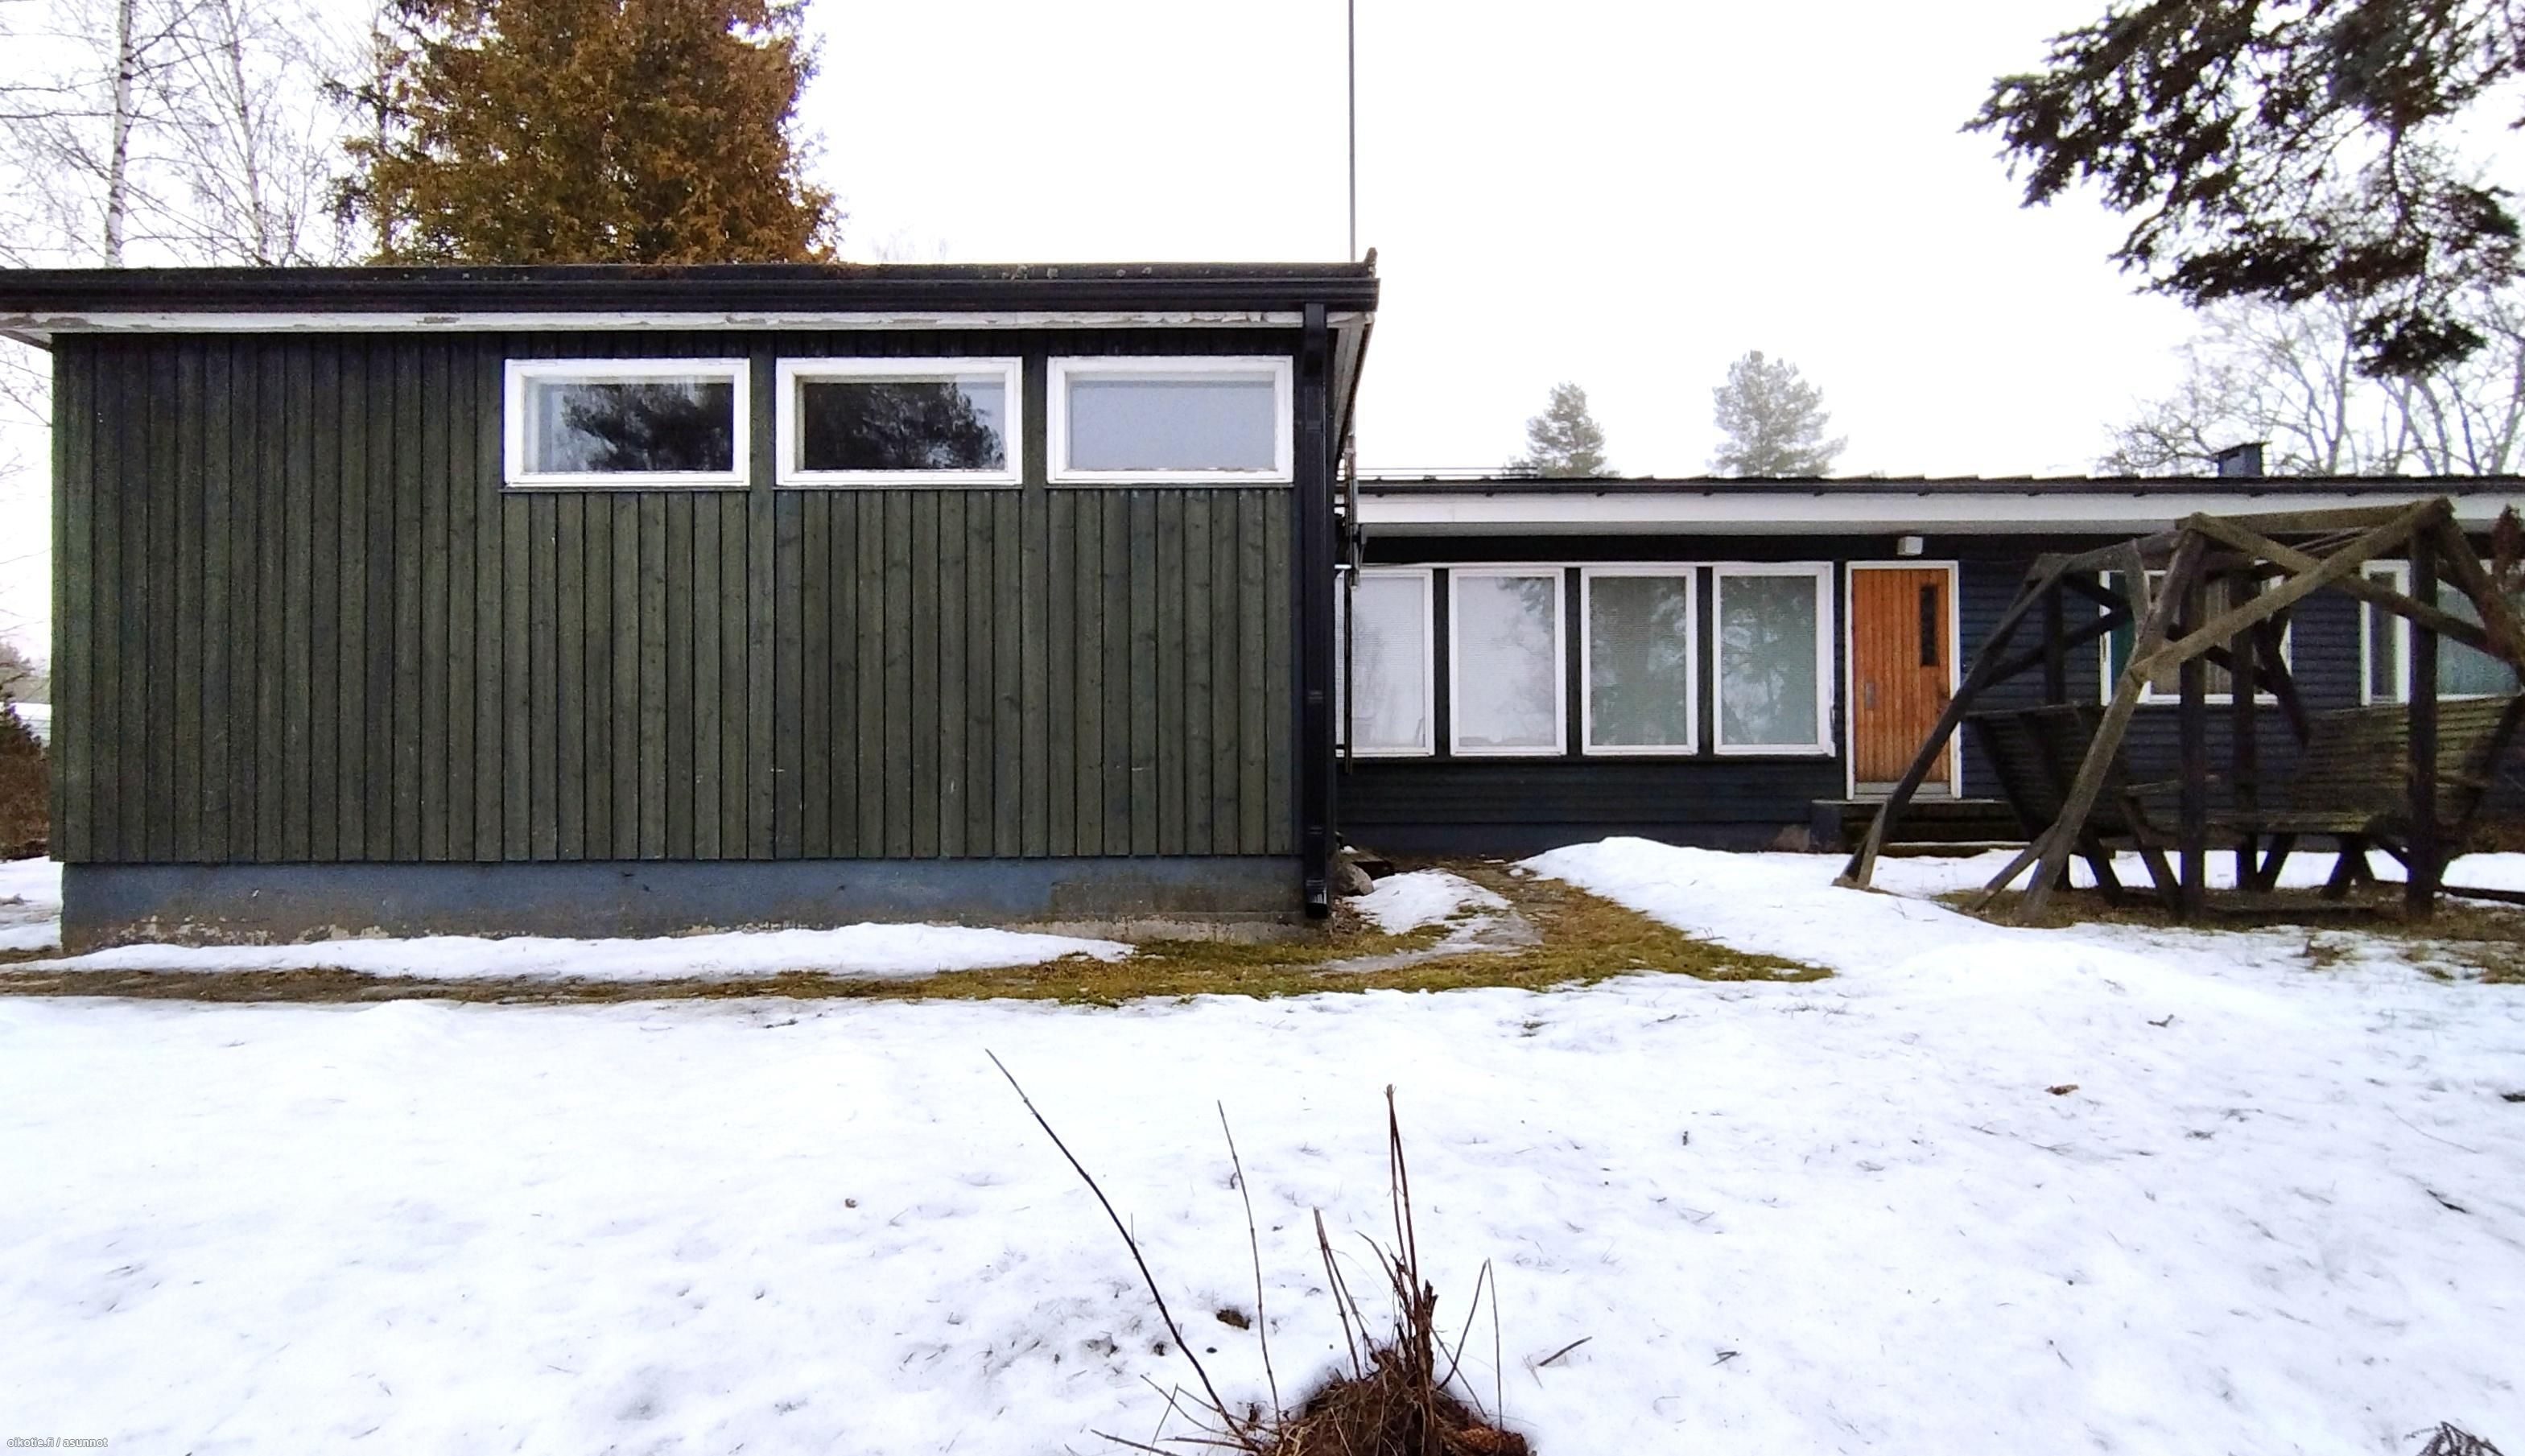  m² Karjapellontie 4, 12100 Hausjärvi 5h, k, psh, sauna, pkh, wc,  autotalli – Oikotie 17166060 – SKVL